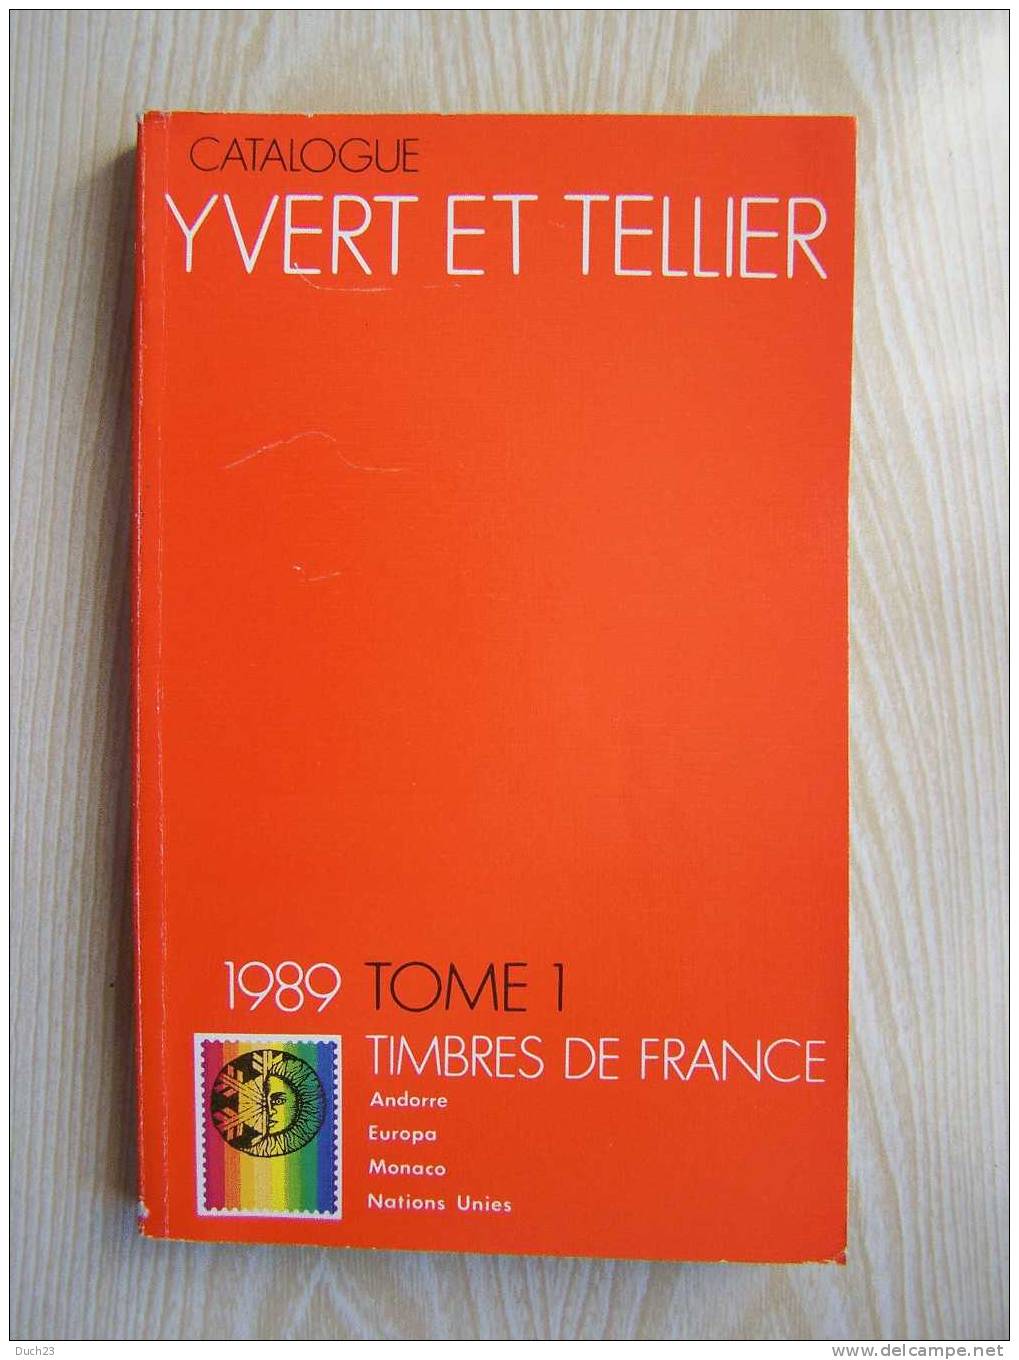 CATALOGUE DE COTATION YVERT ET TELLIER ANNEE 1989 TOME 1 TRES BON ETAT   REF CD - Frankrijk